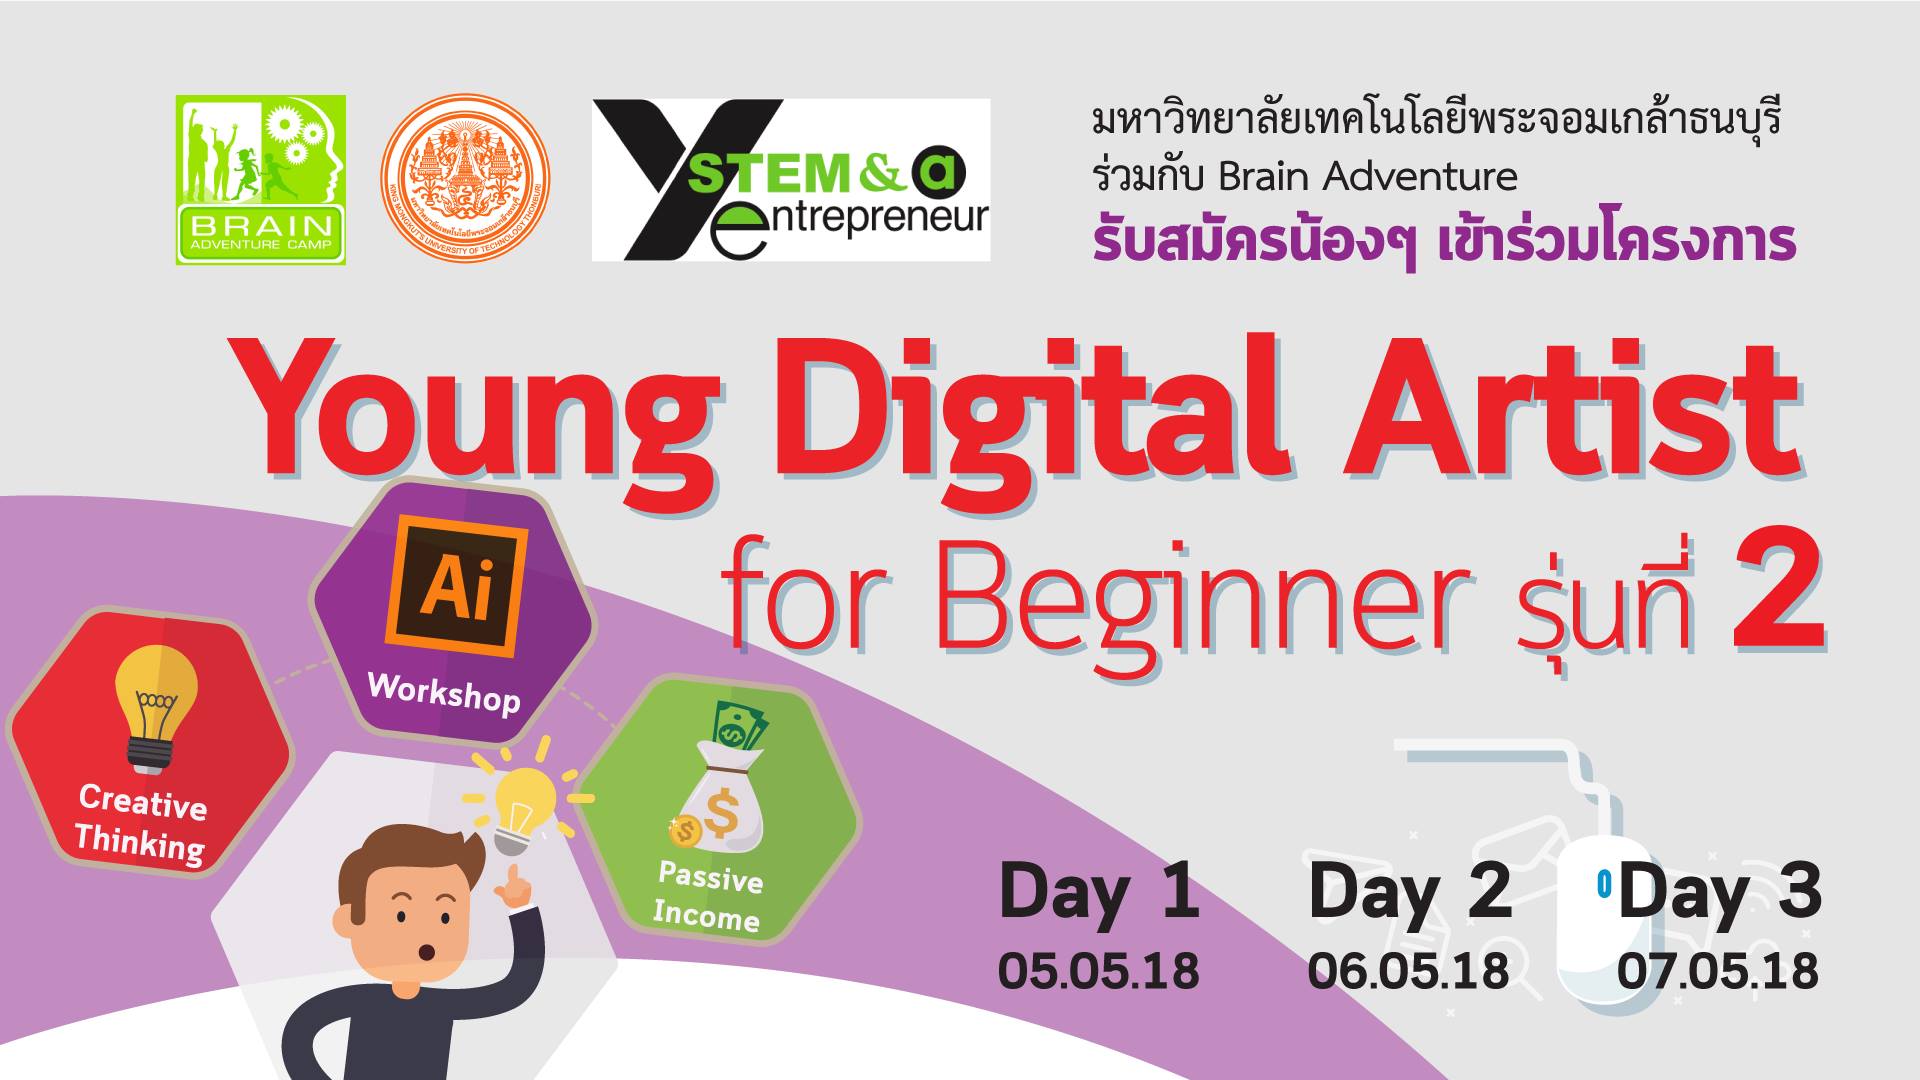 Young Digital Artist for Beginner 3 days Workshop รุ่น 2